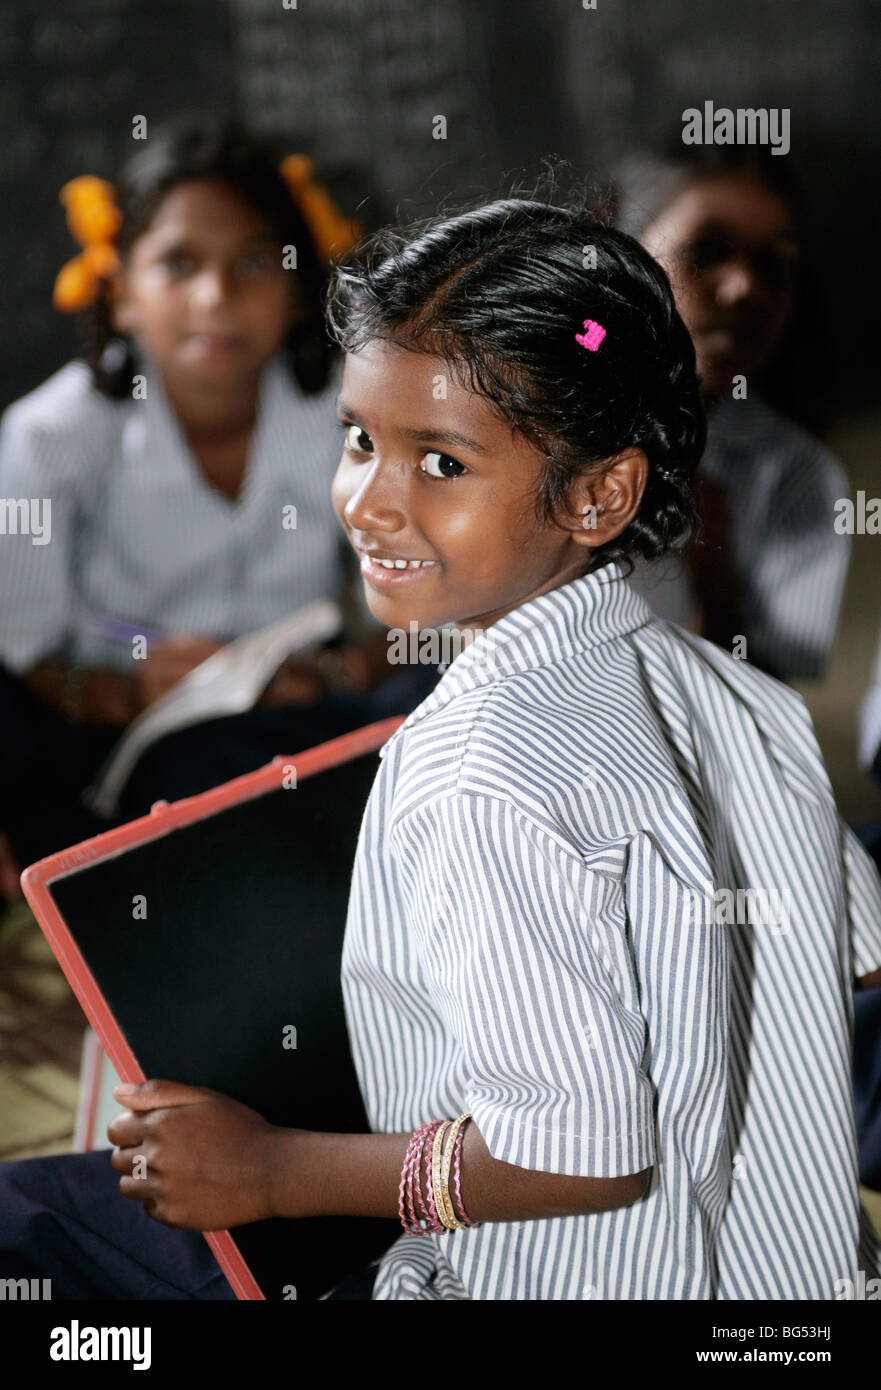 Les élèves d'une classe dans une école en Tamil Nadu, Inde Banque D'Images